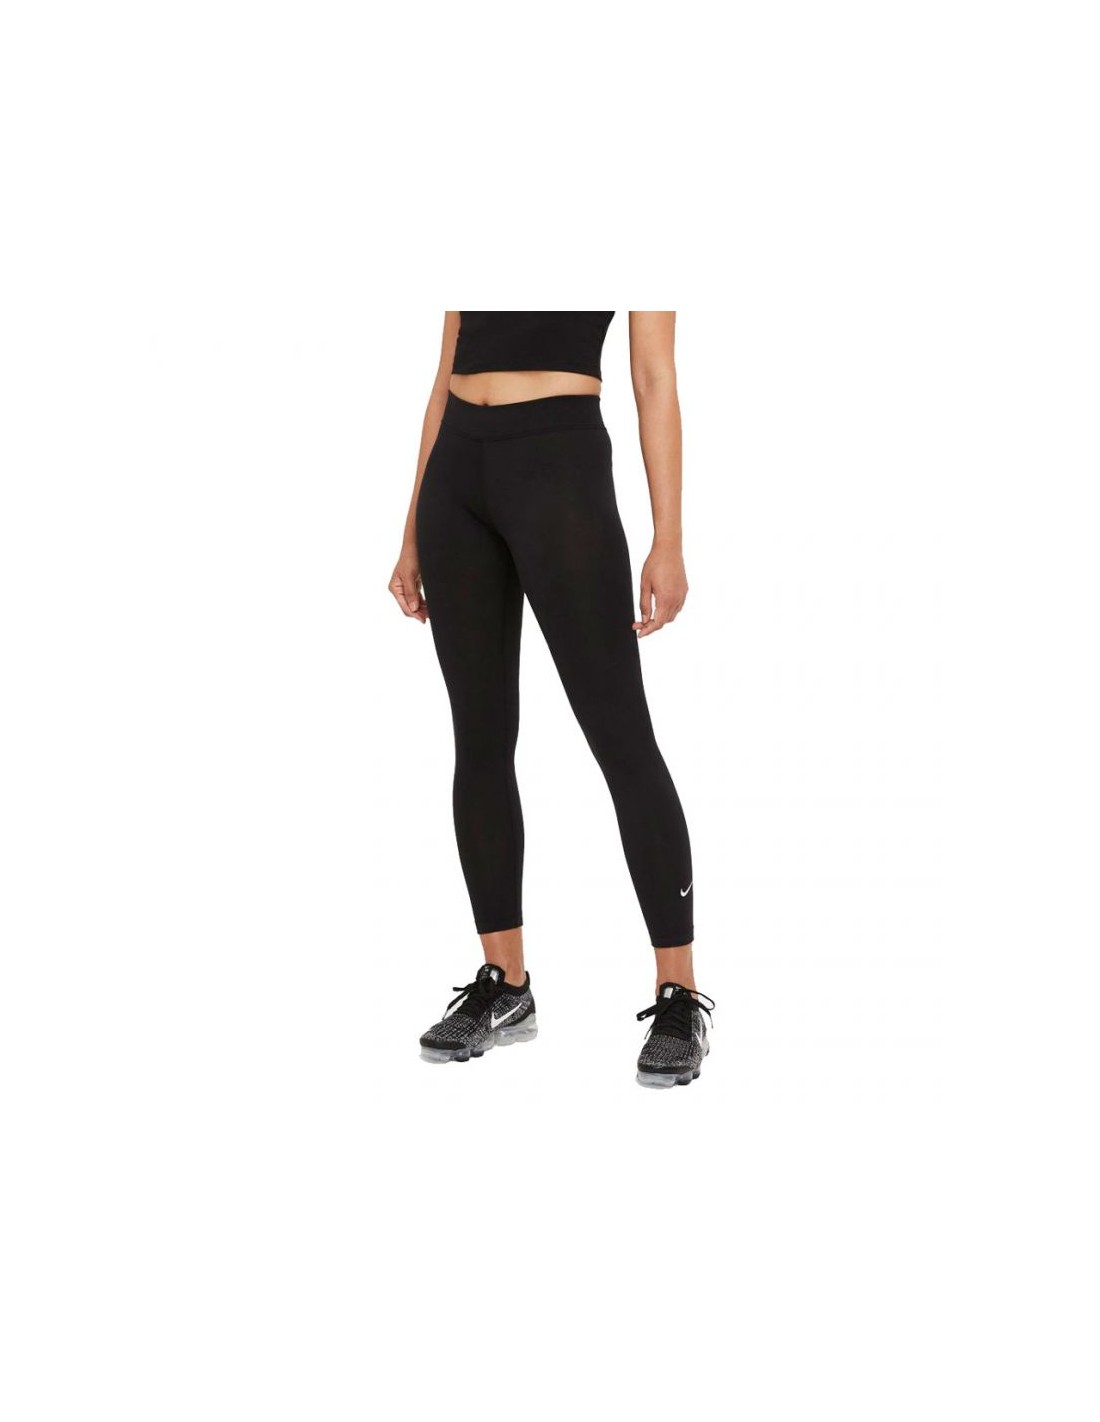 Women's 7/8 Mid-Rise Leggings Nike Sportswear Essential Swoosh CZ8532-063